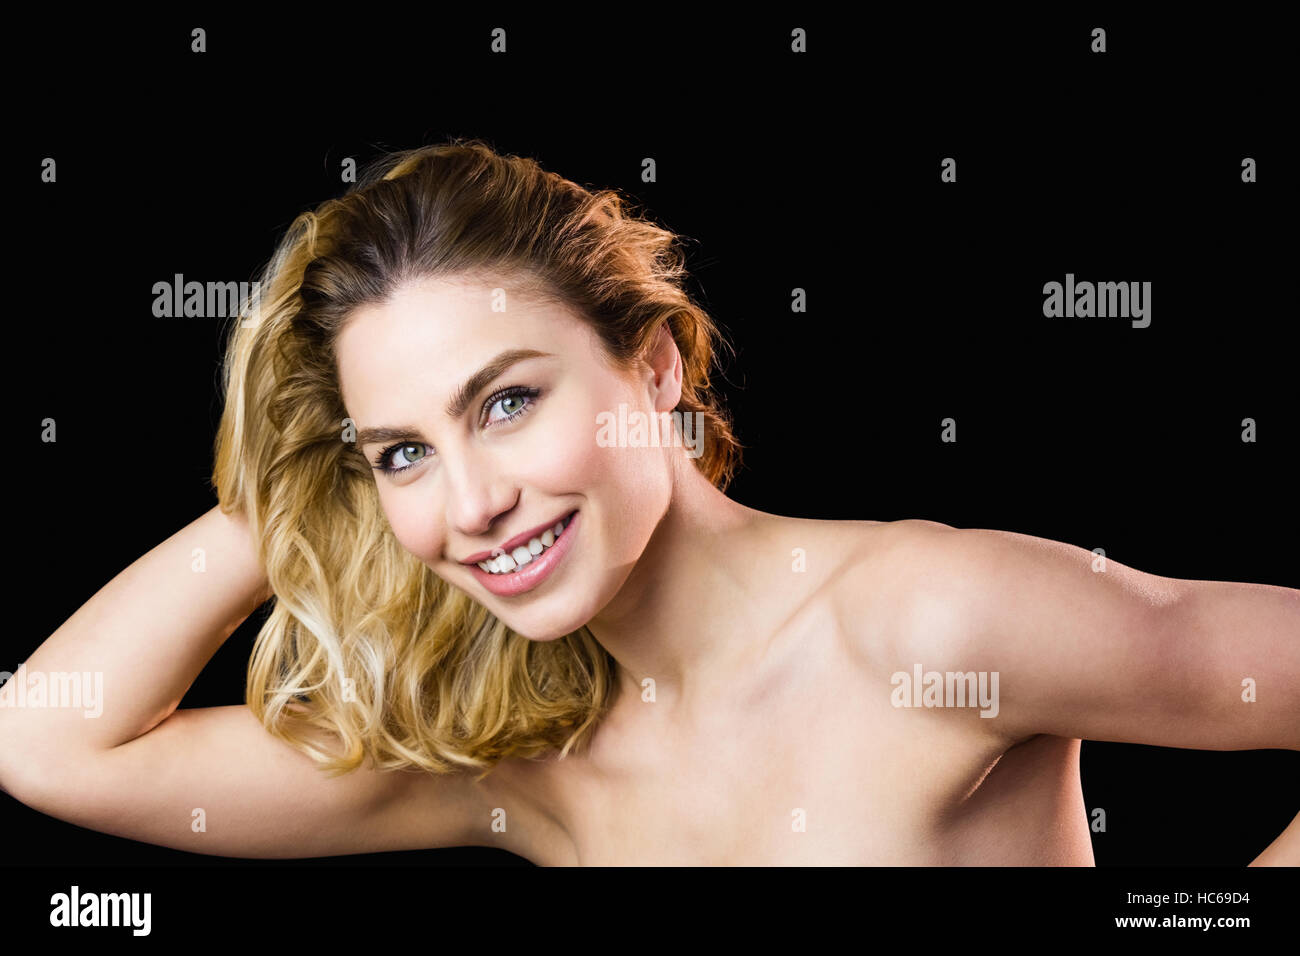 Portrait of Beautiful woman smiling sur fond noir Banque D'Images